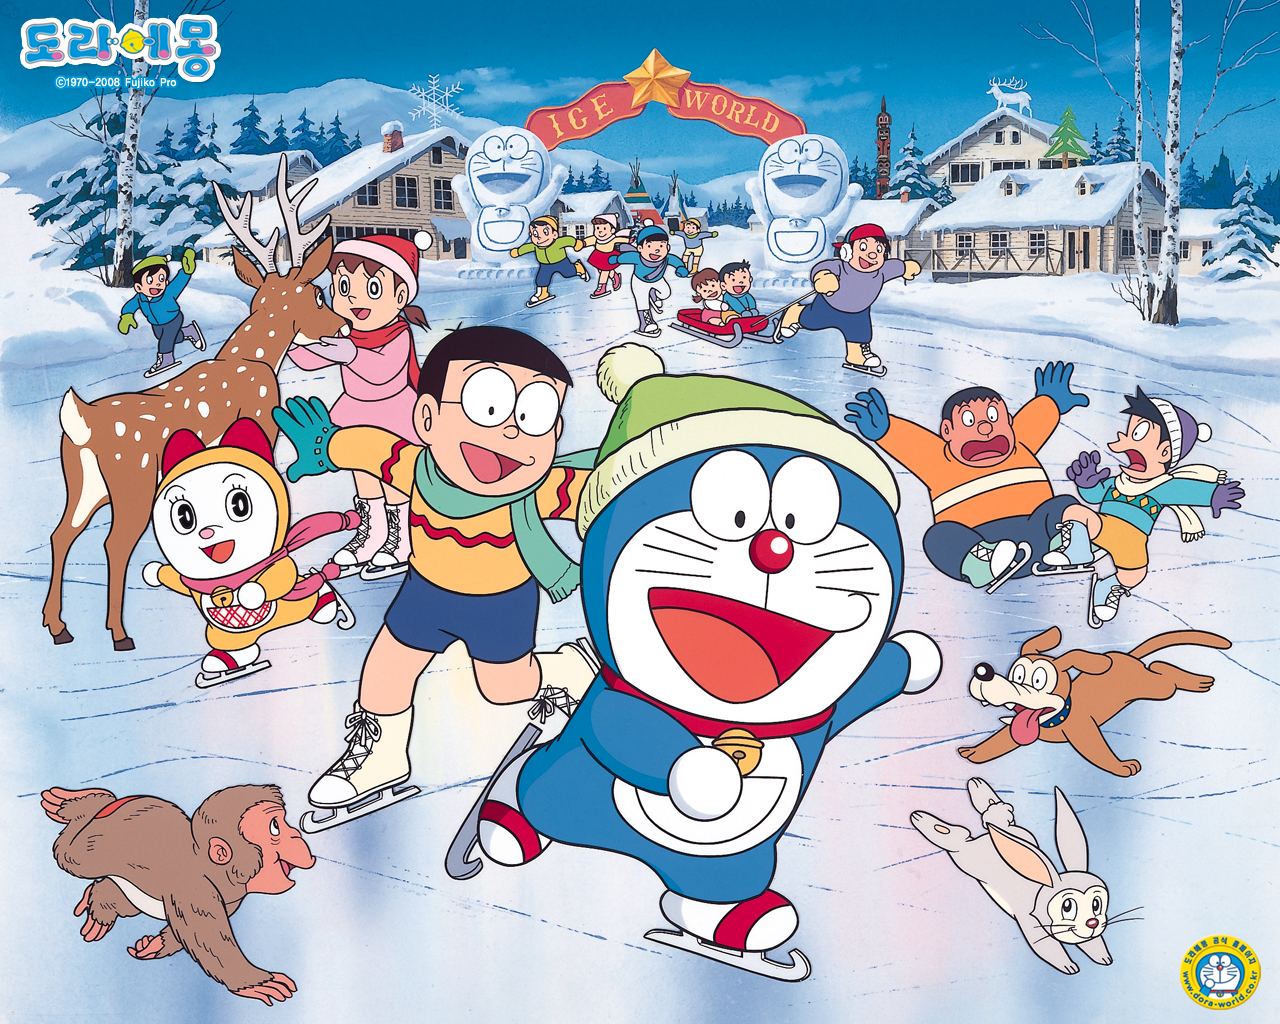 Anime Doraemon Picture: Bạn là người yêu thích anime và cũng đam mê những bộ truyện tranh huyền thoại của Nhật Bản? Hãy xem ngay bức ảnh anime Doraemon tuyệt đẹp này để khám phá thêm một thế giới đầy màu sắc và tràn đầy niềm vui nhé!